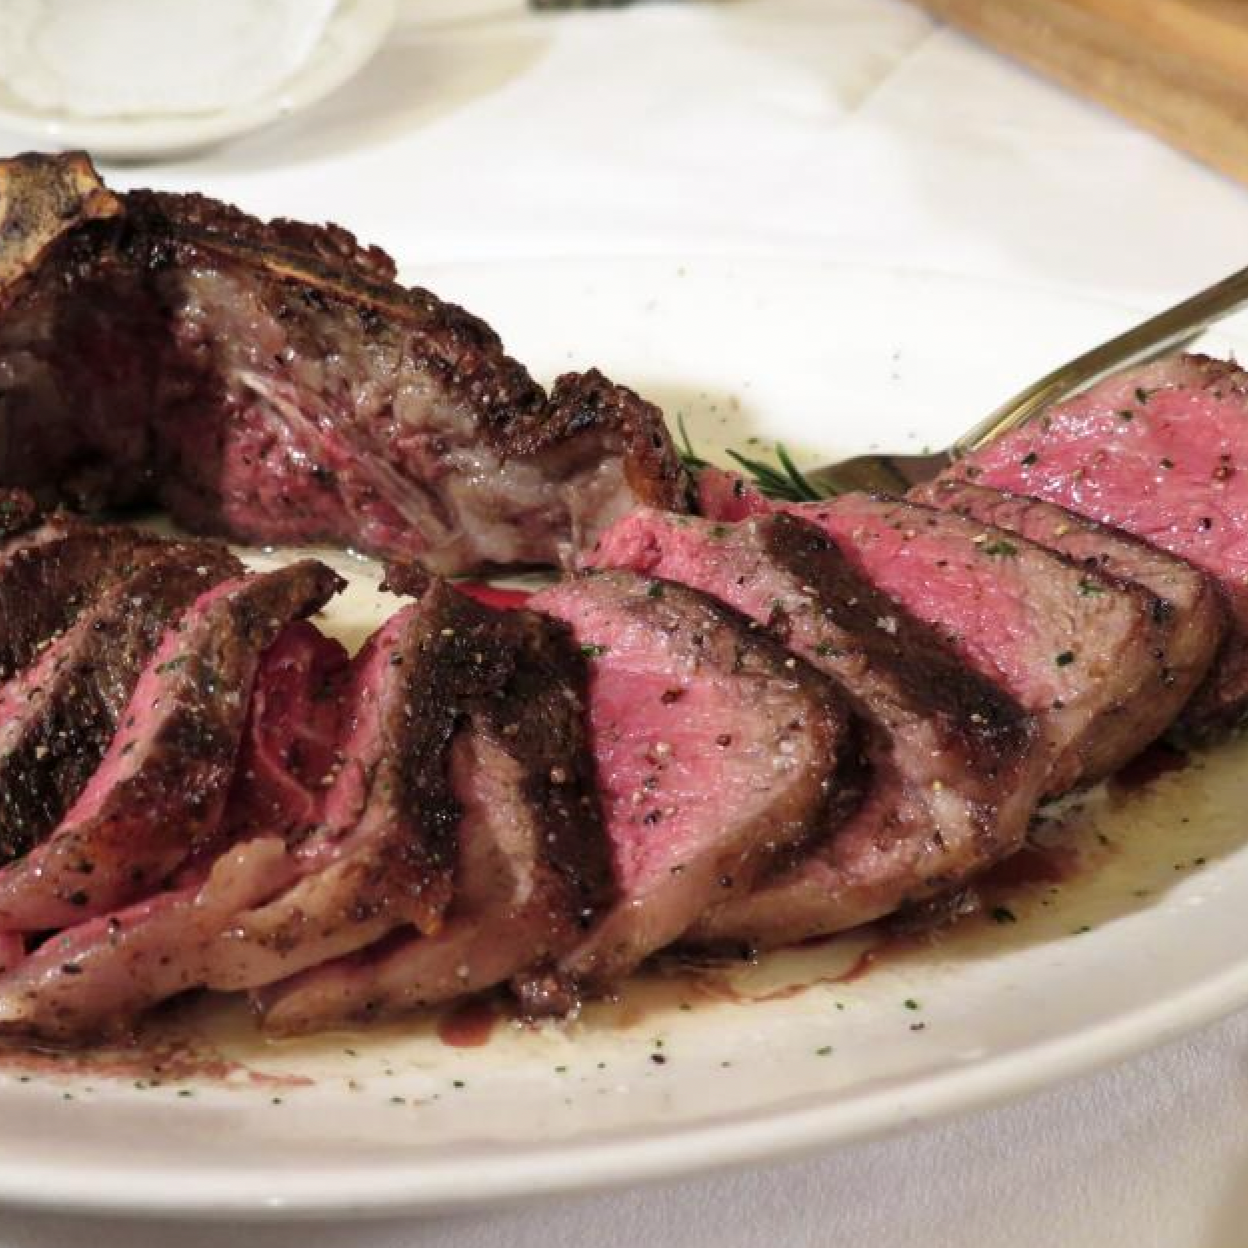 USDA Prime Bone-In New York Strip Steak